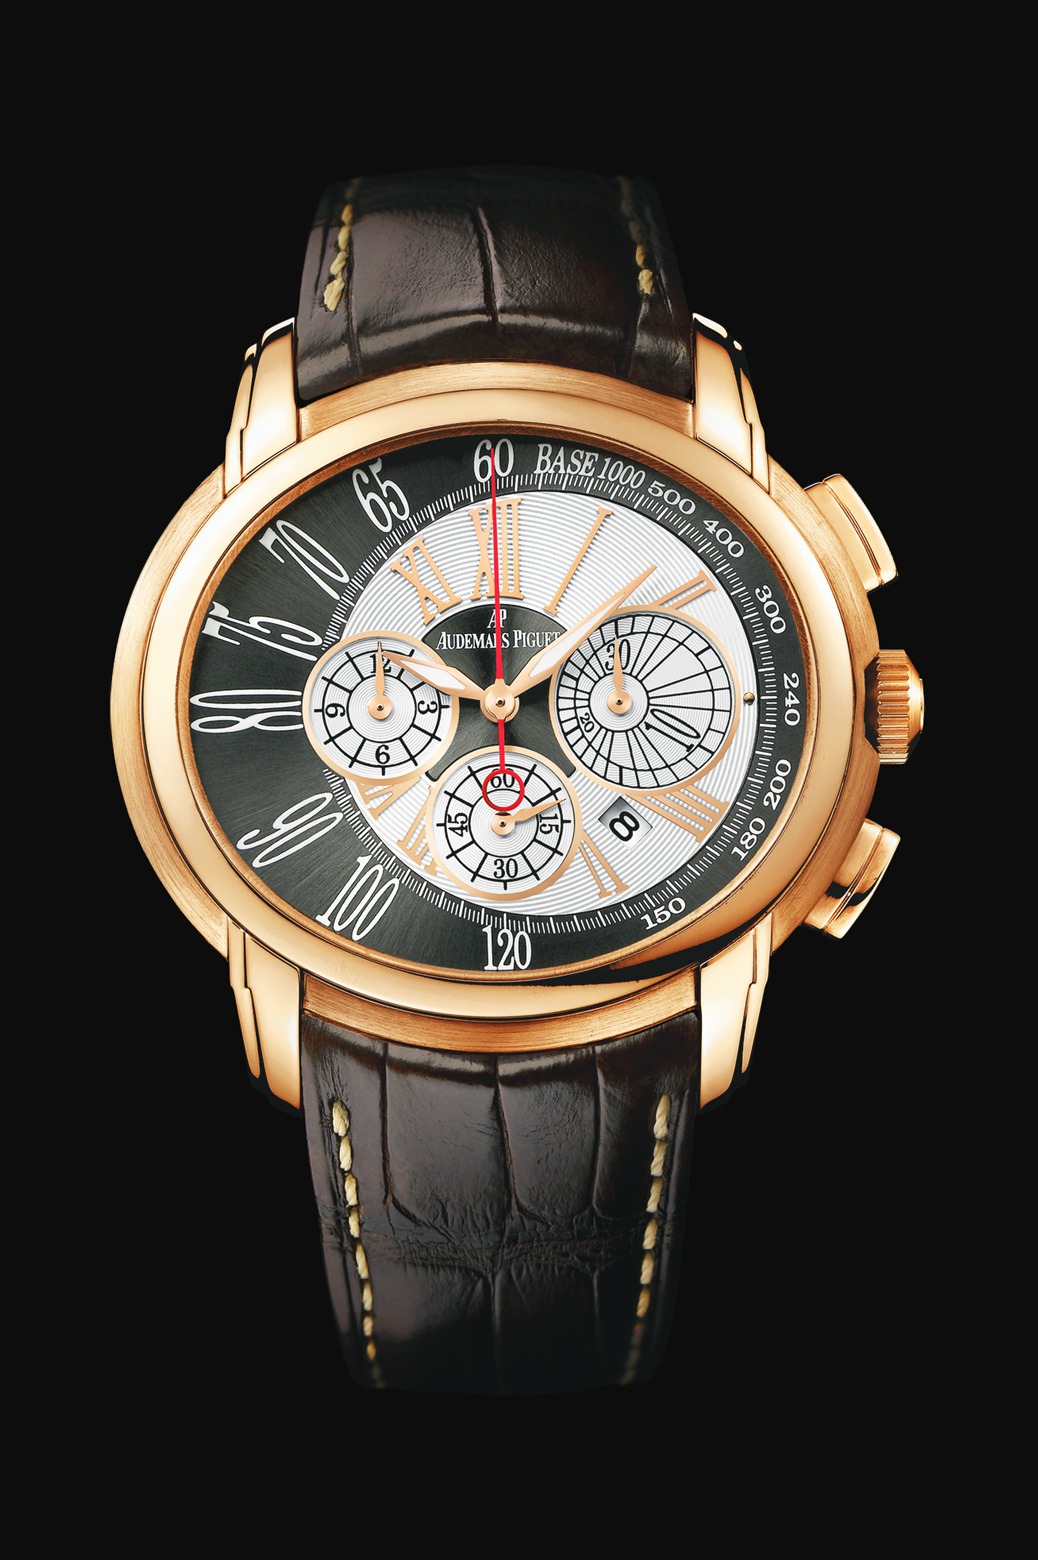 Audemars Piguet Millenary Chronograph Pink Gold watch REF: 26145OR.OO.D093CR.01